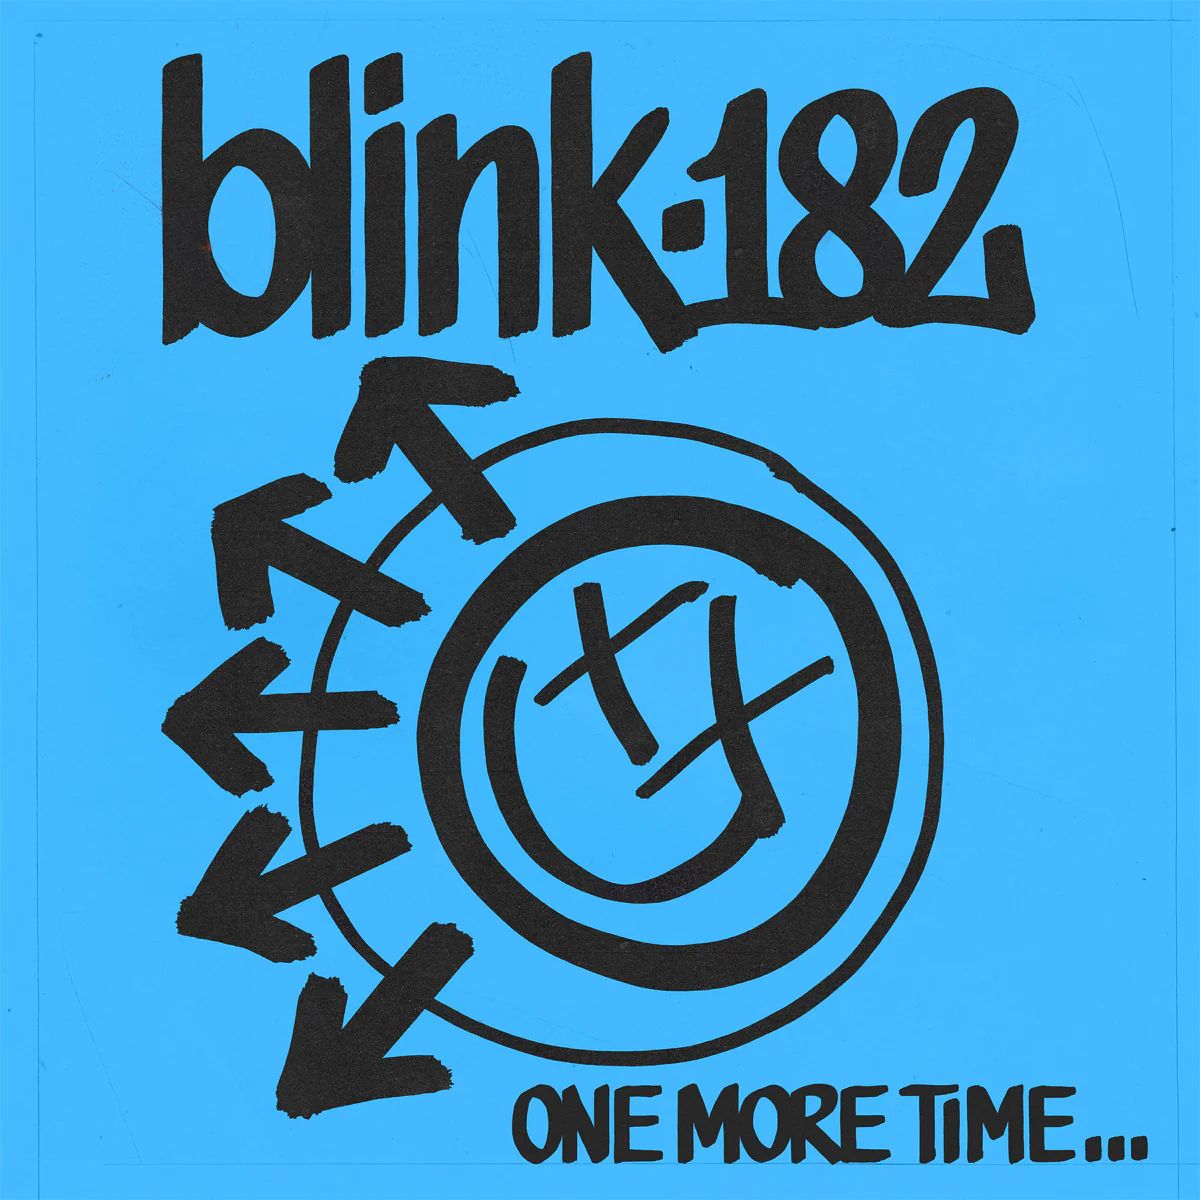 blink-182 - More Than You Know - Testo Traduzione Significato